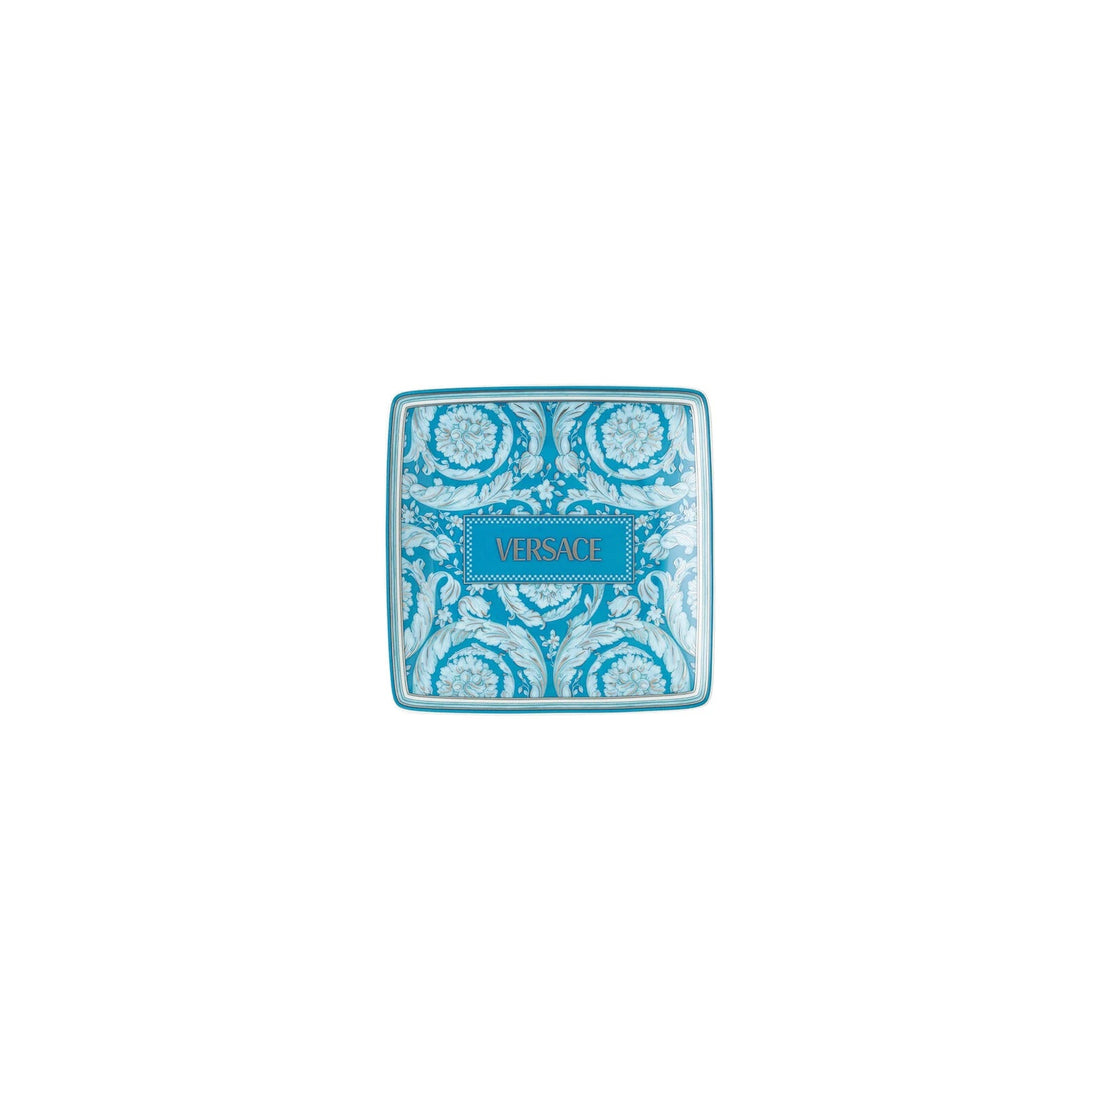 VERSACE - Barocco Teal Ciotola Coppetta 12cm Azzurro Porcellana